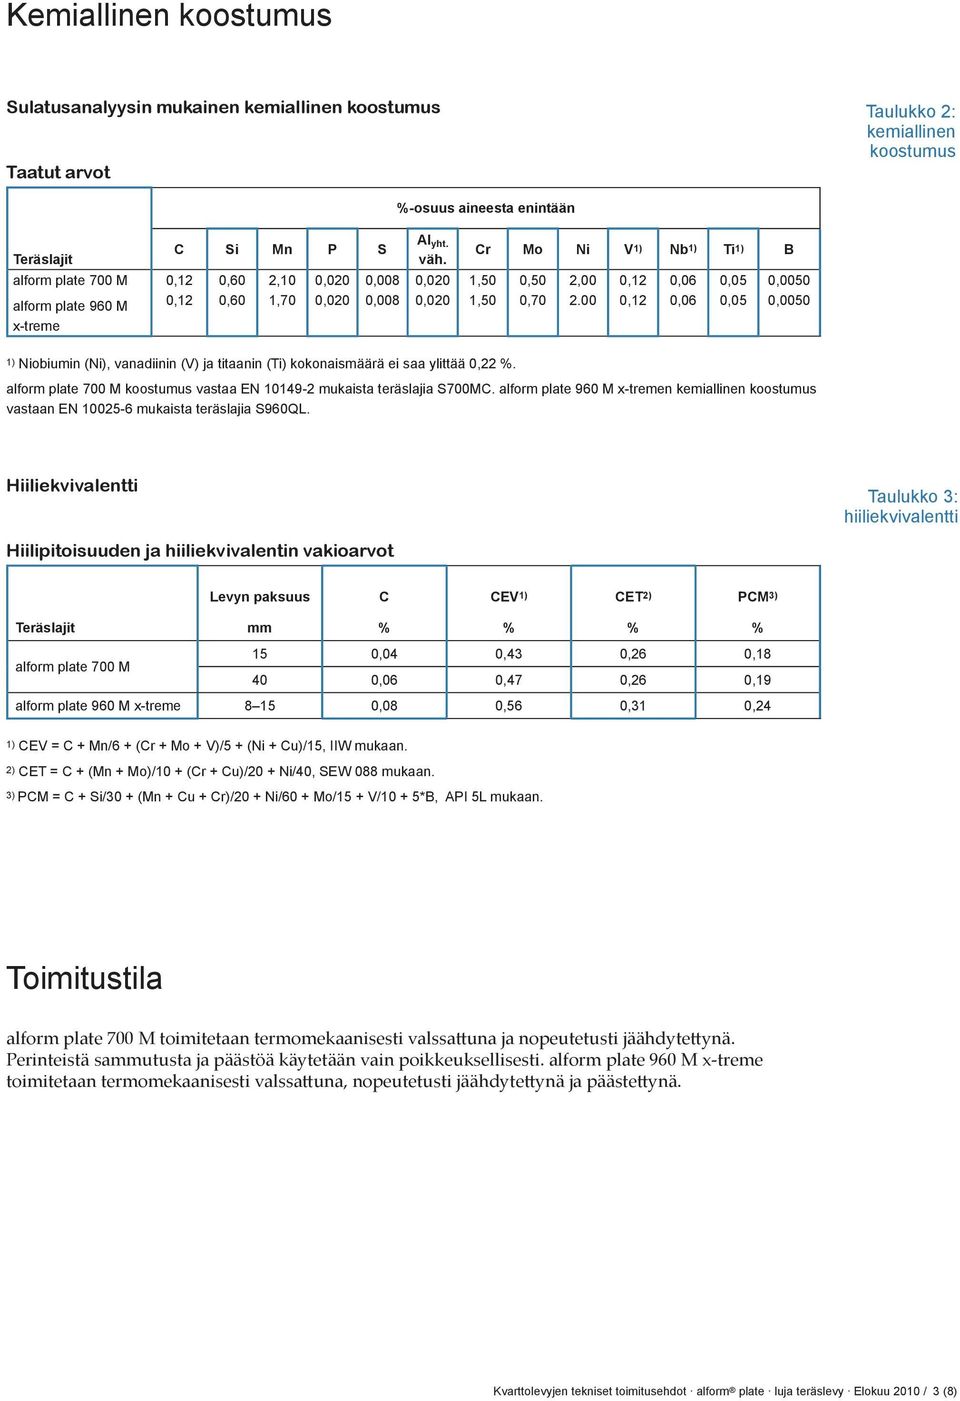 00 0,12 0,12 0,06 0,06 0,05 0,05 0,0050 0,0050 1) Niobiumin (Ni), vanadiinin (V) ja titaanin (Ti) kokonaismäärä ei saa ylittää 0,22. koostumus vastaa EN 10149-2 mukaista teräslajia S700MC.